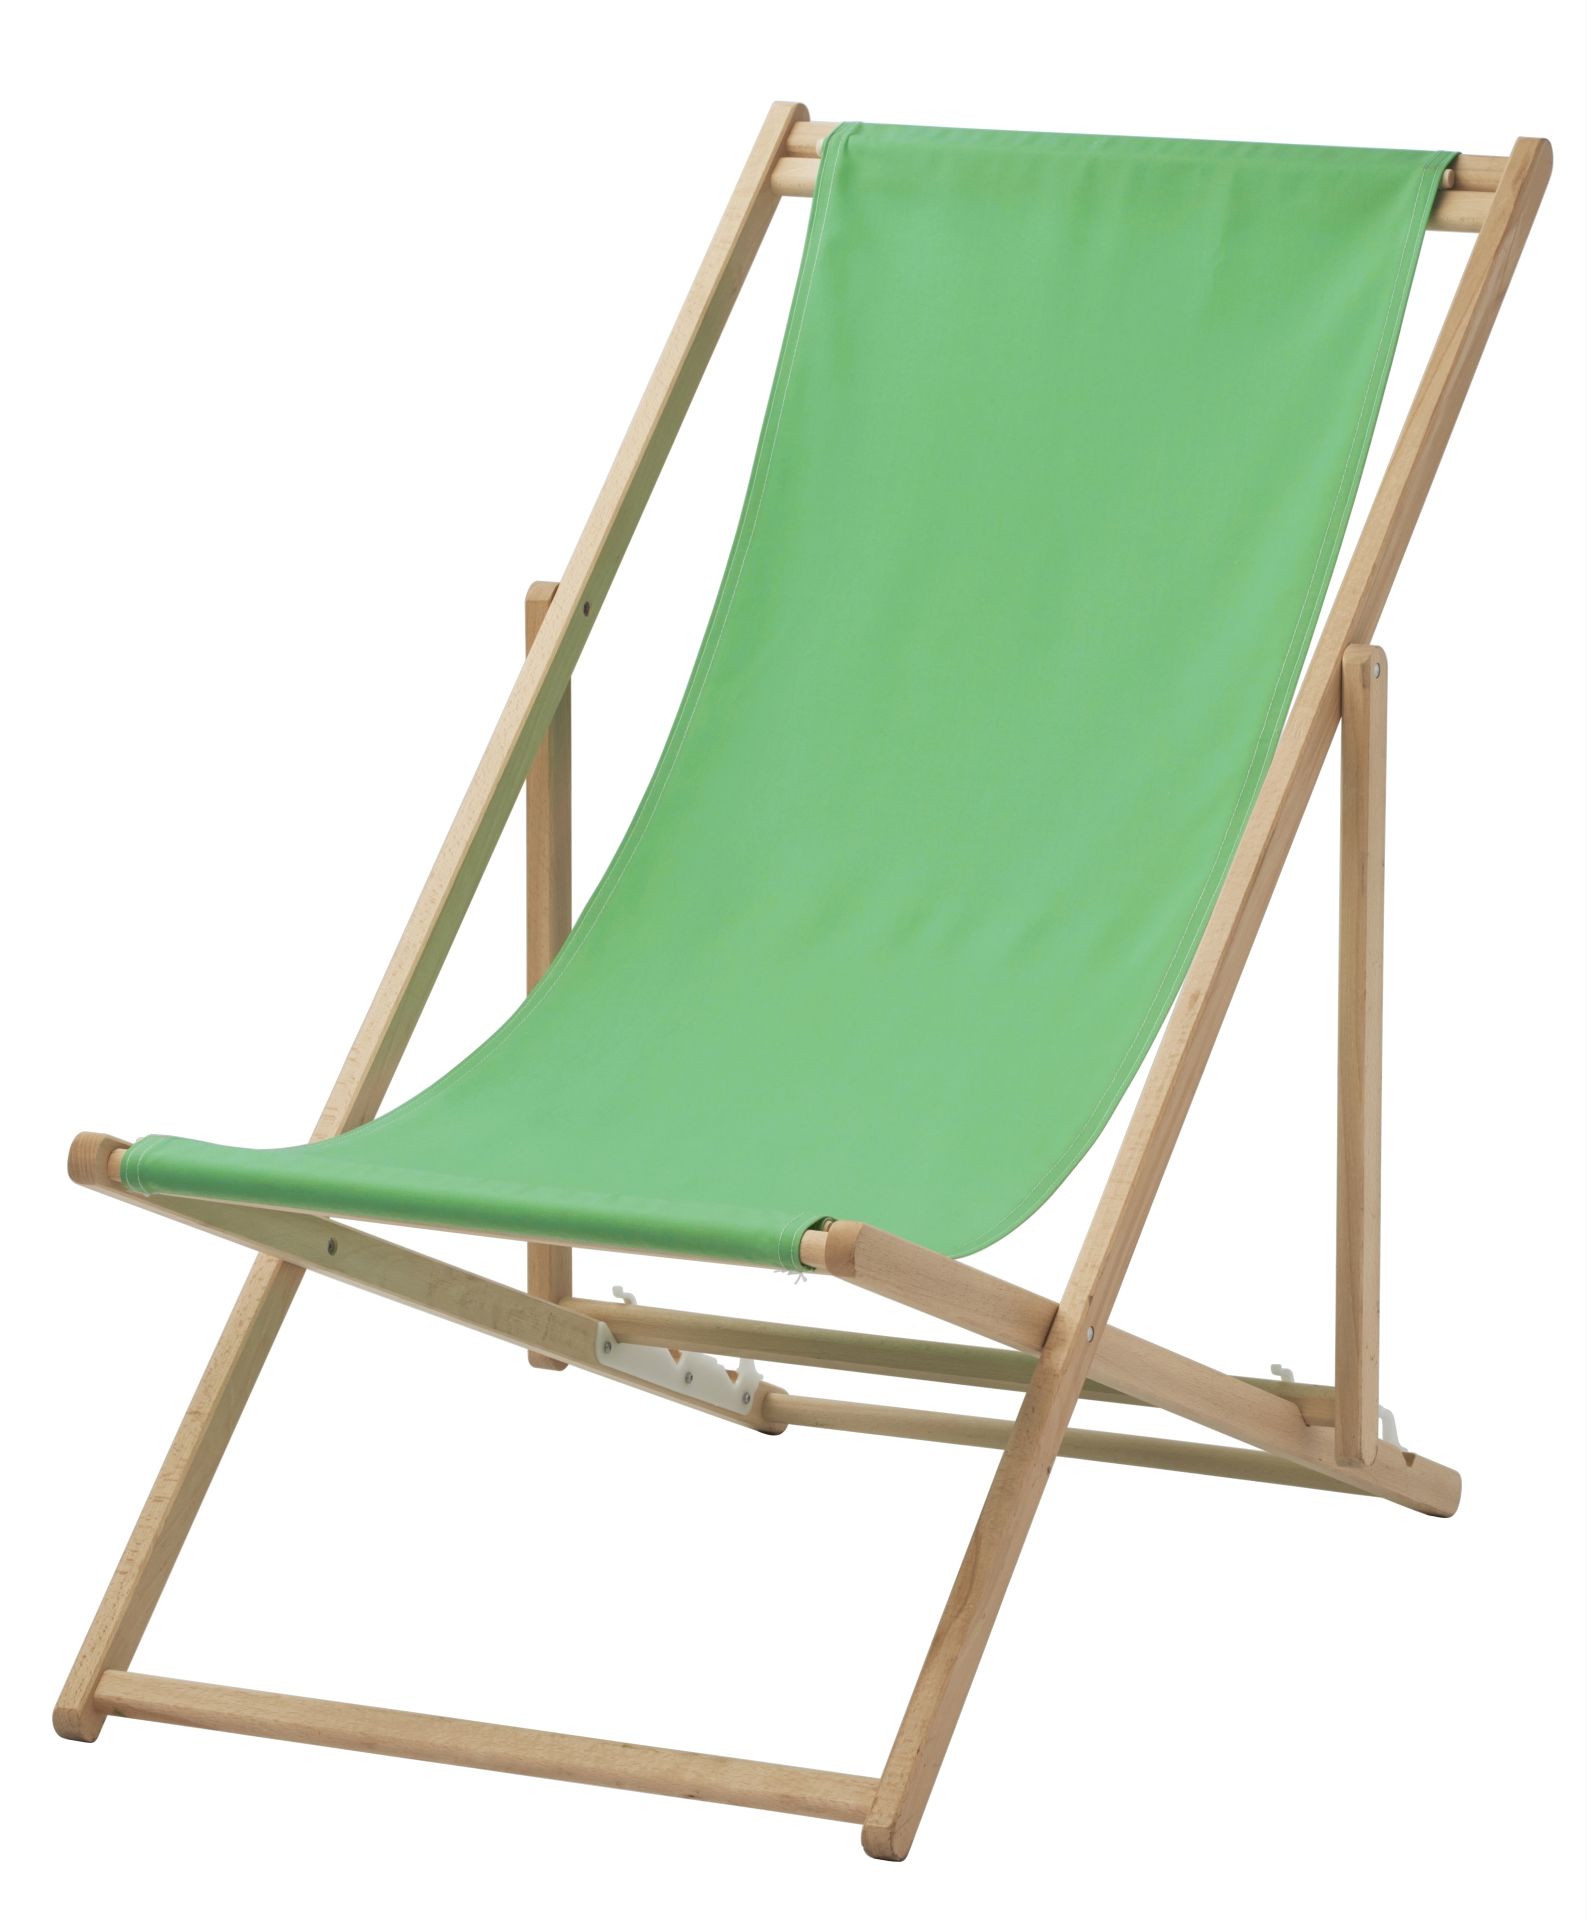 MYSINGSÖ beach chairs